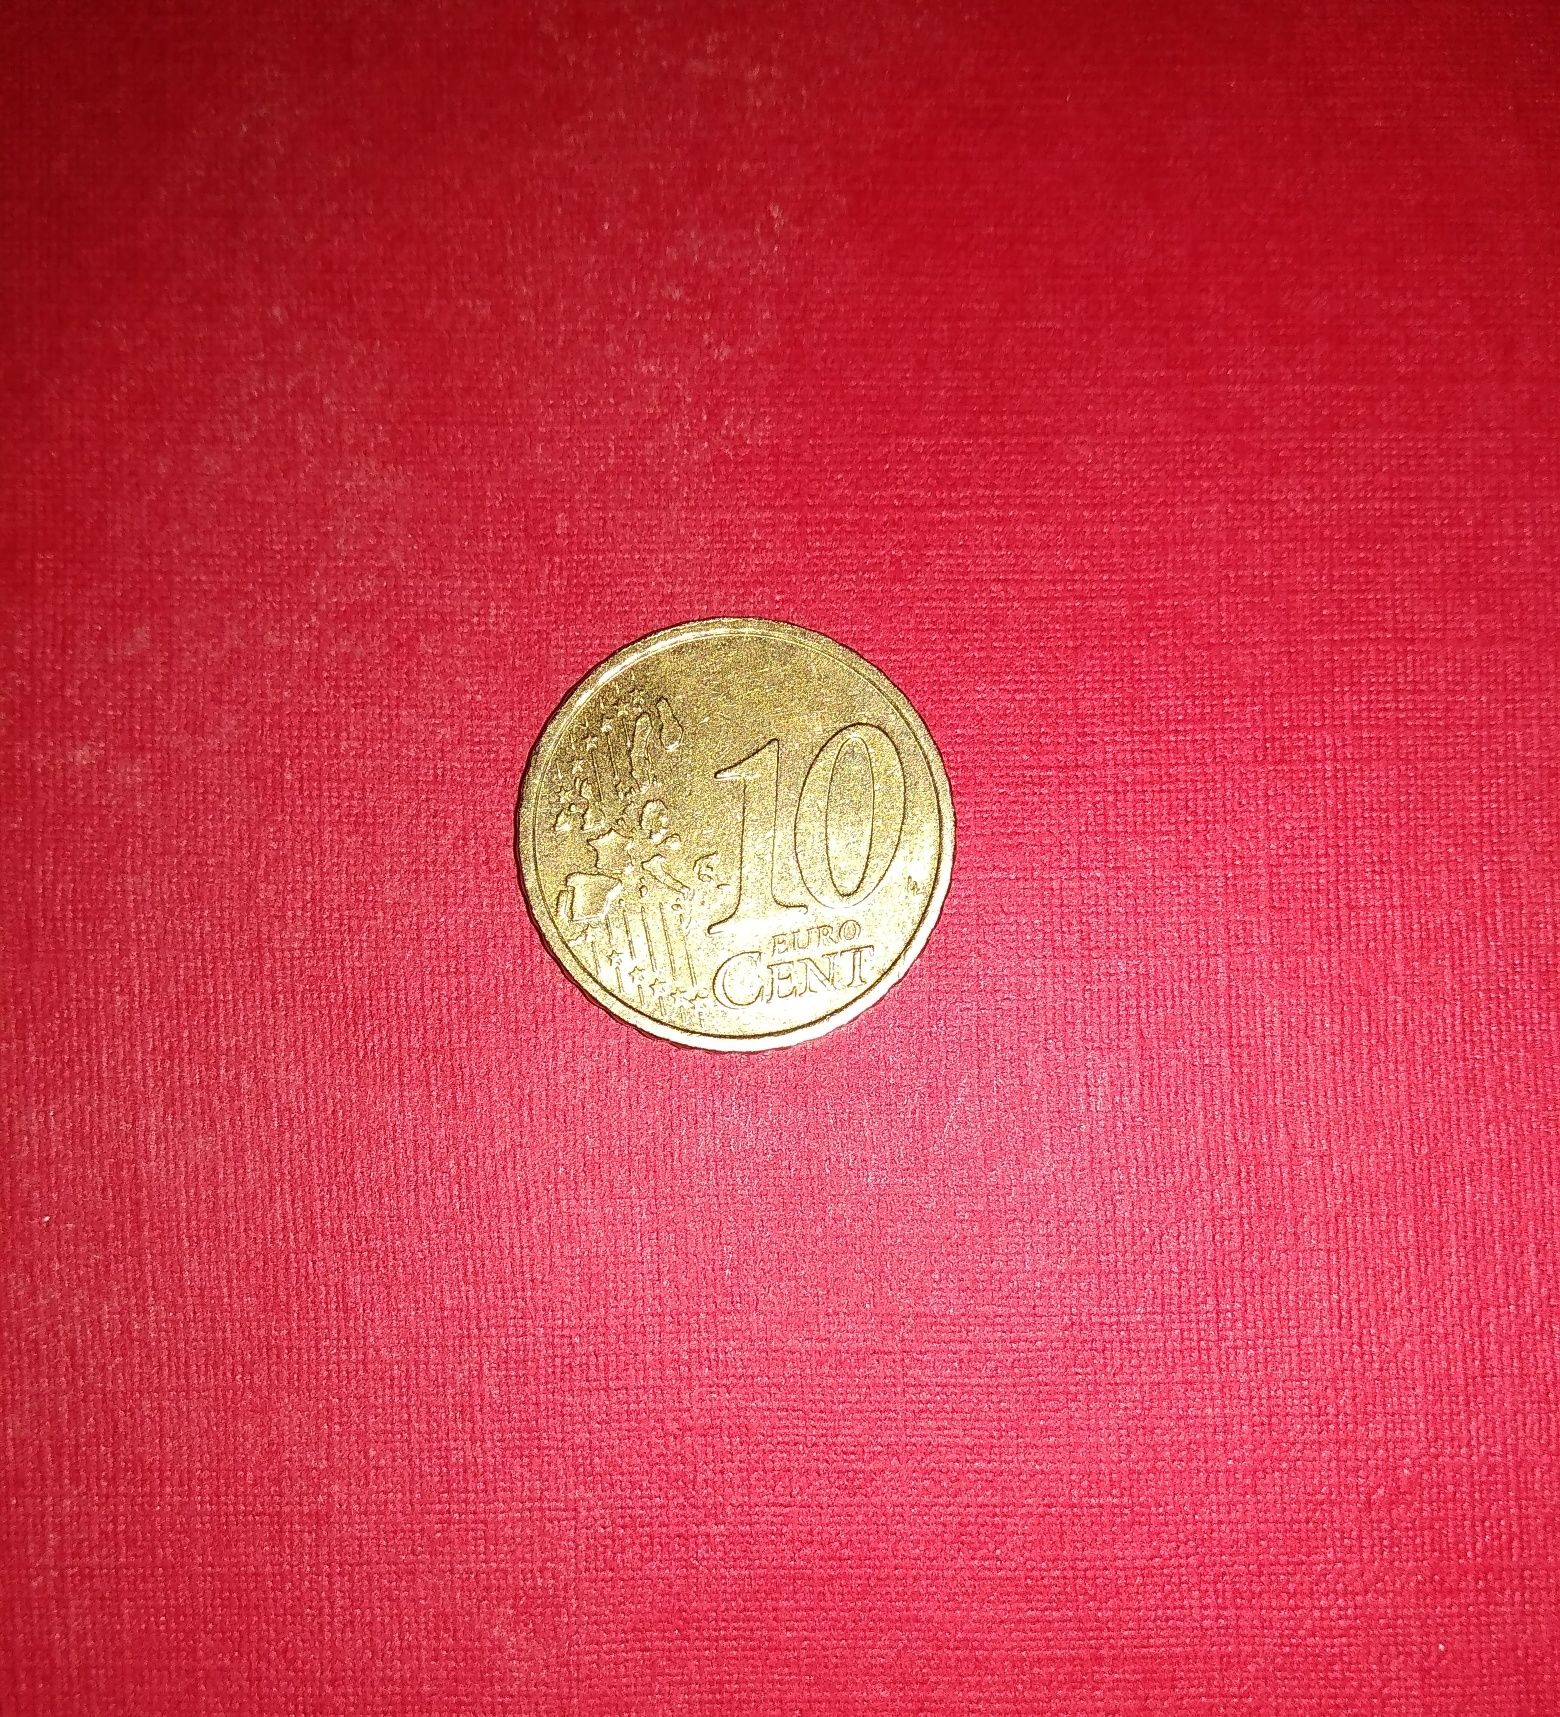 10 евро центов euro cent